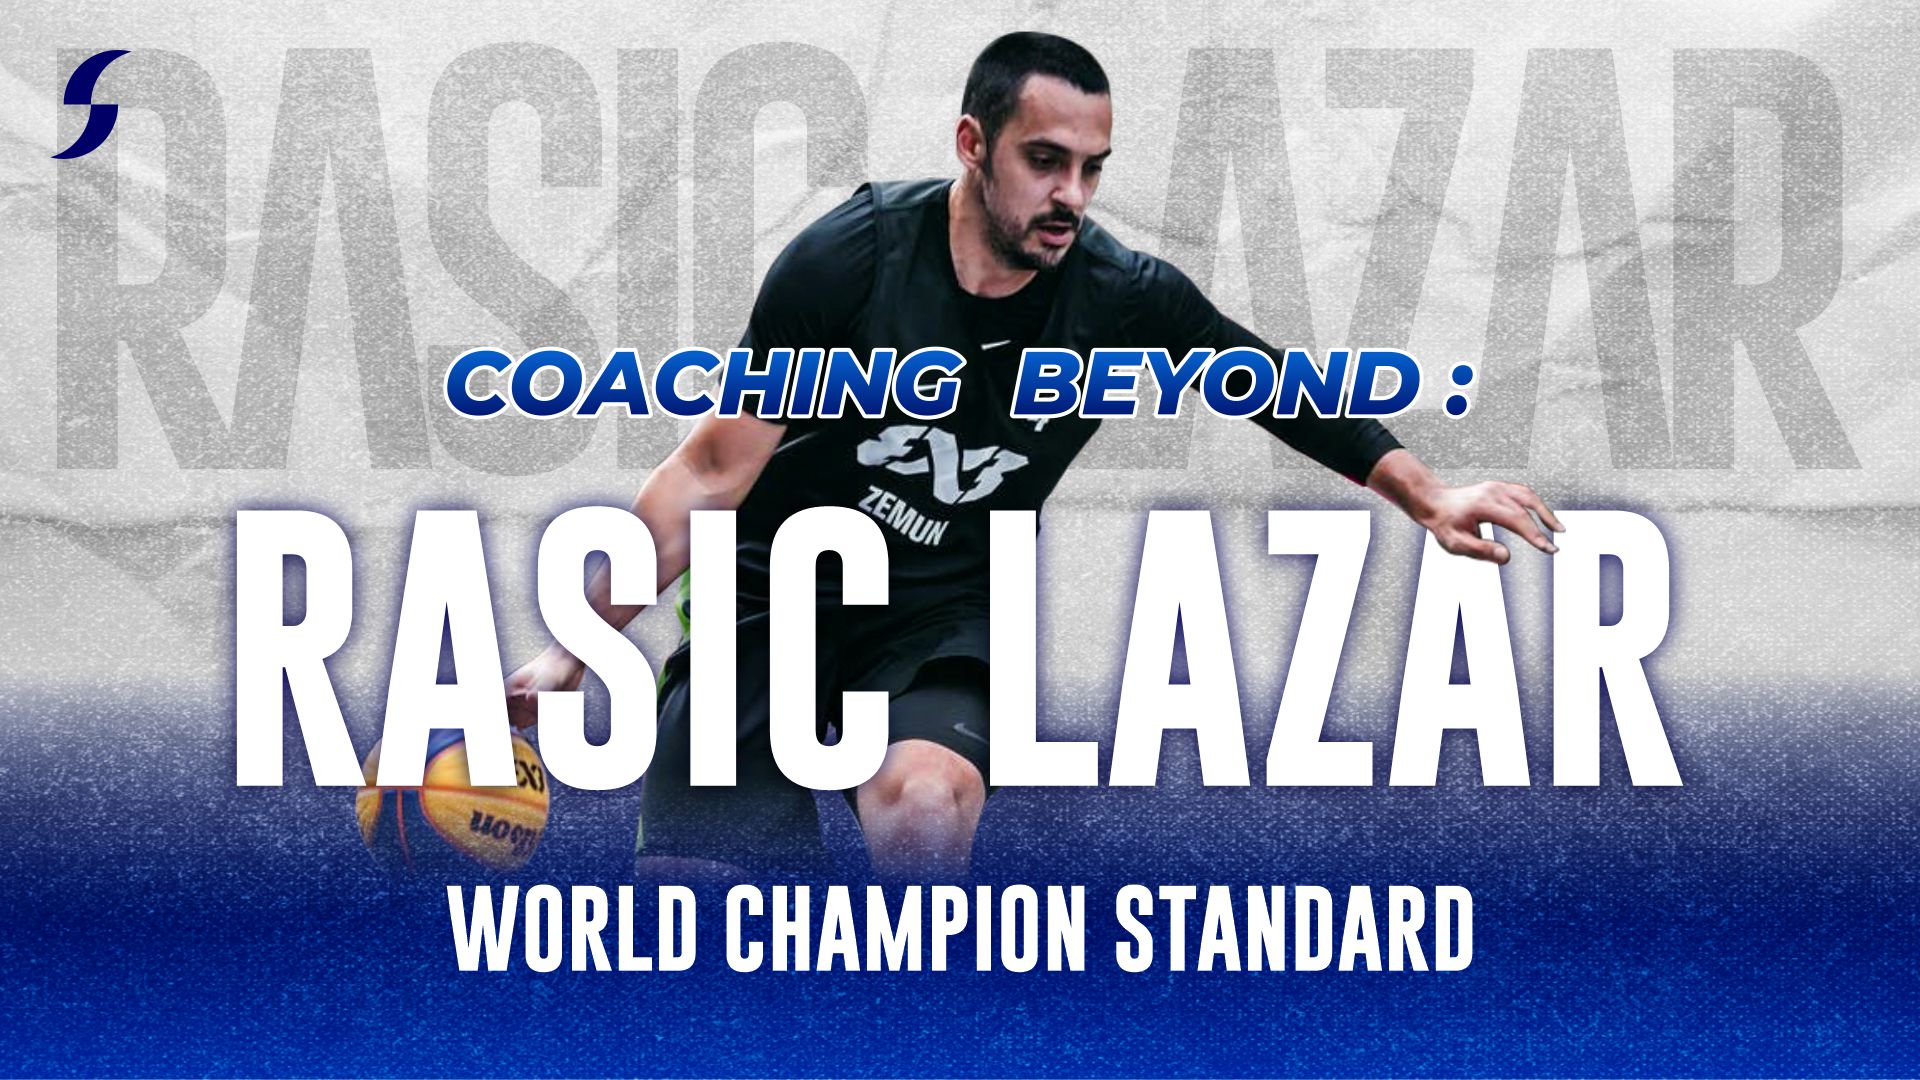 [WATCH NOW] Coaching Beyond: Rasic Lazar